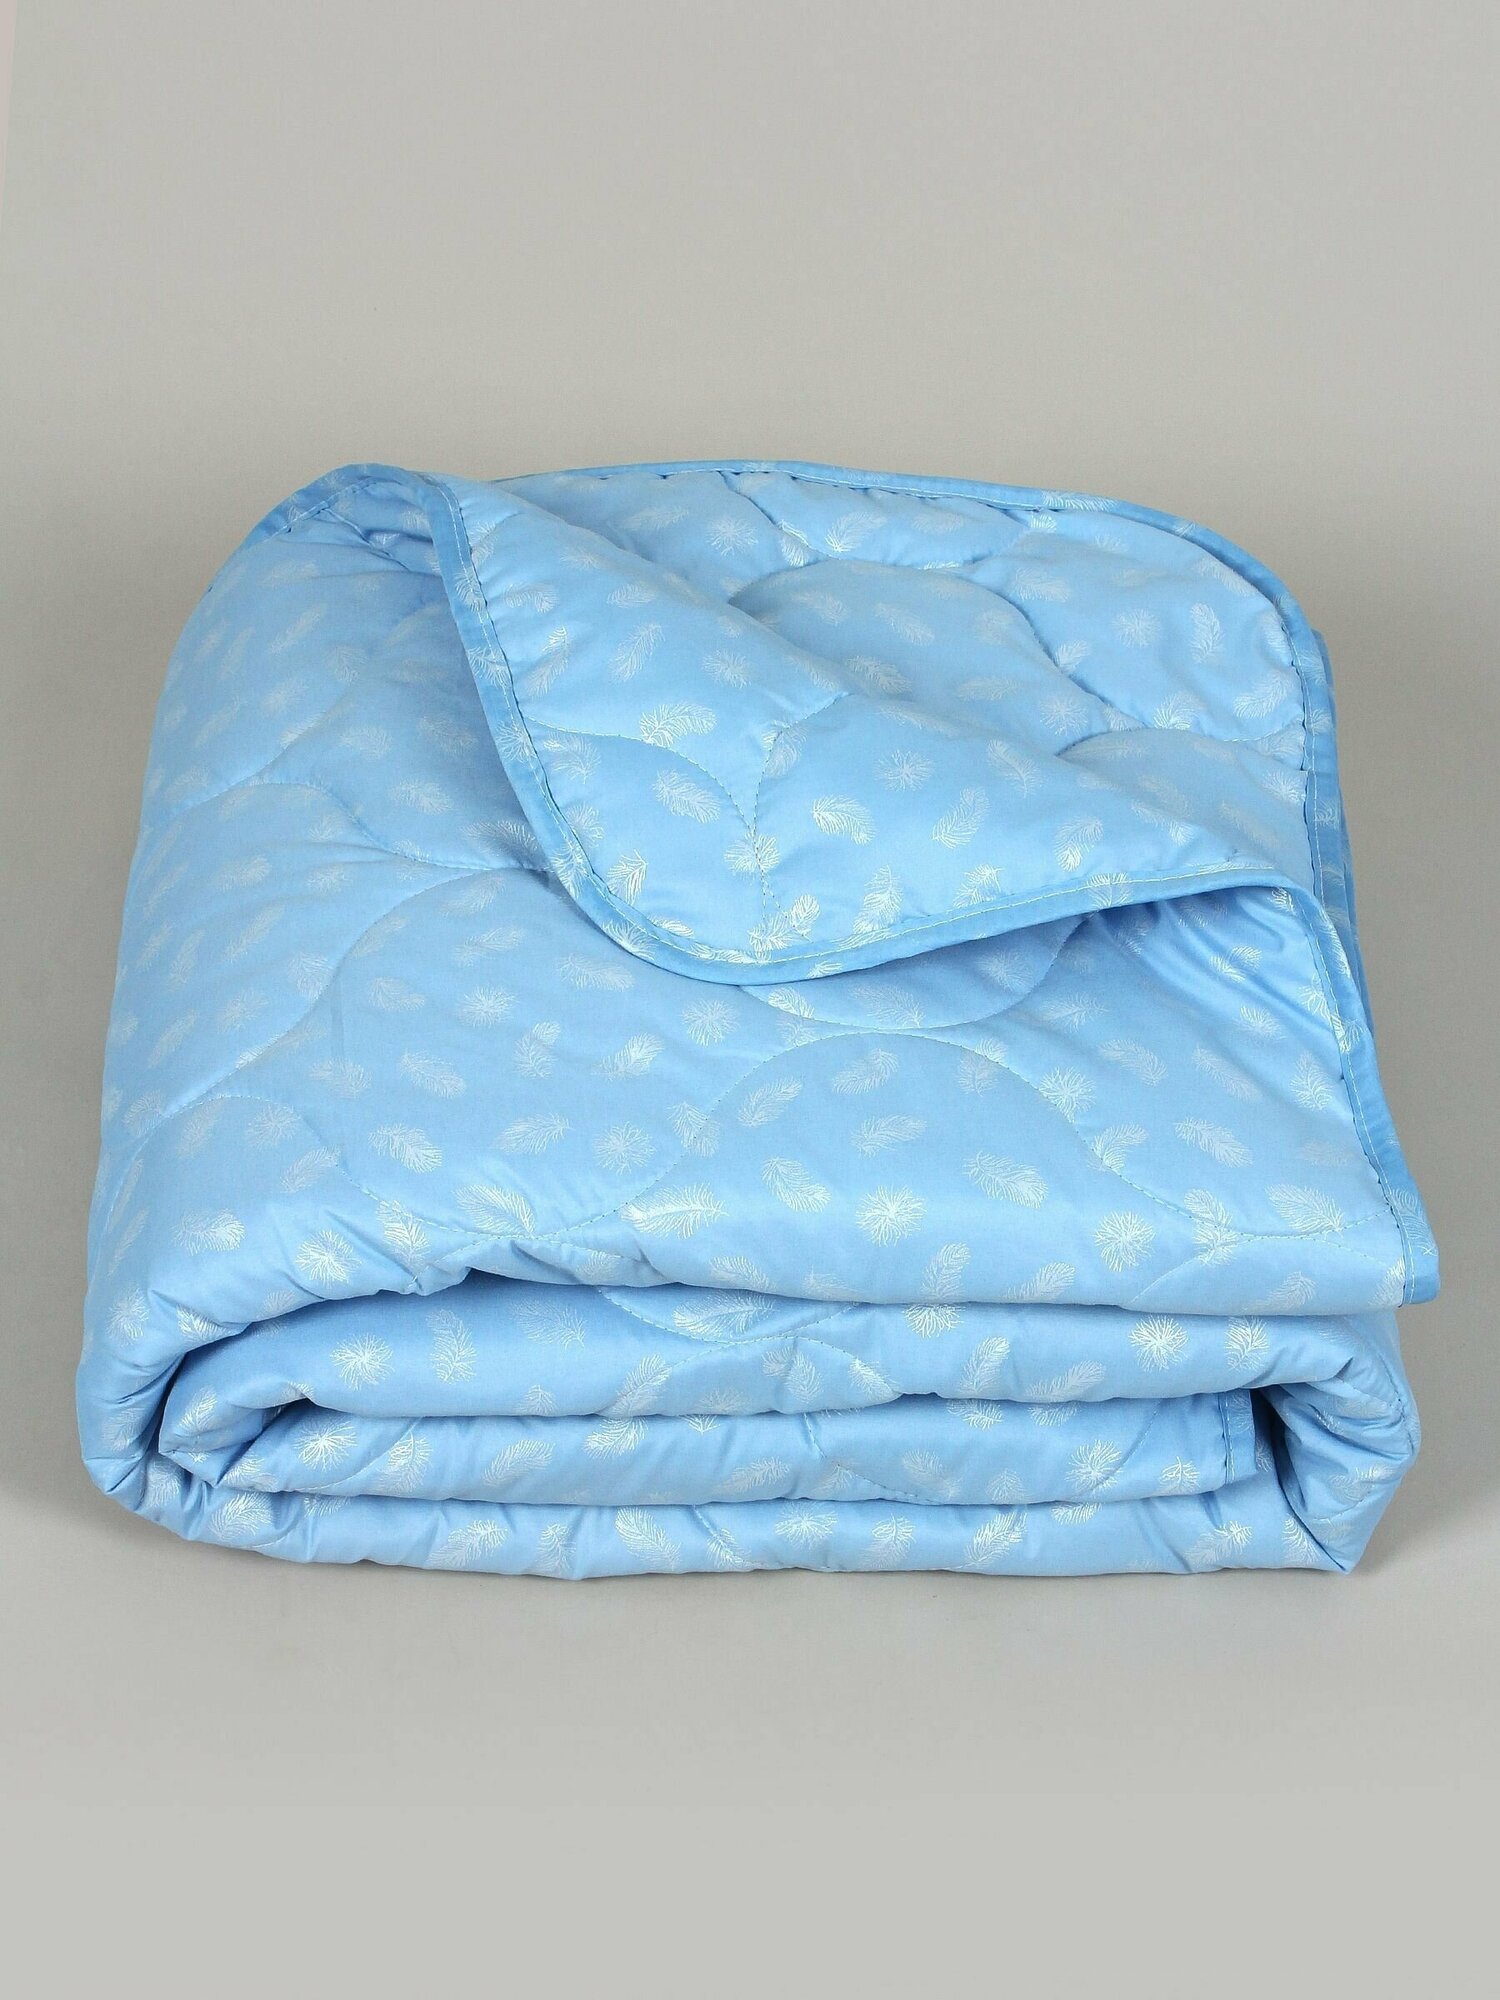 Одеяло "Лебяжий пух" облегченное, в поплексе, плотность 150 г/м2